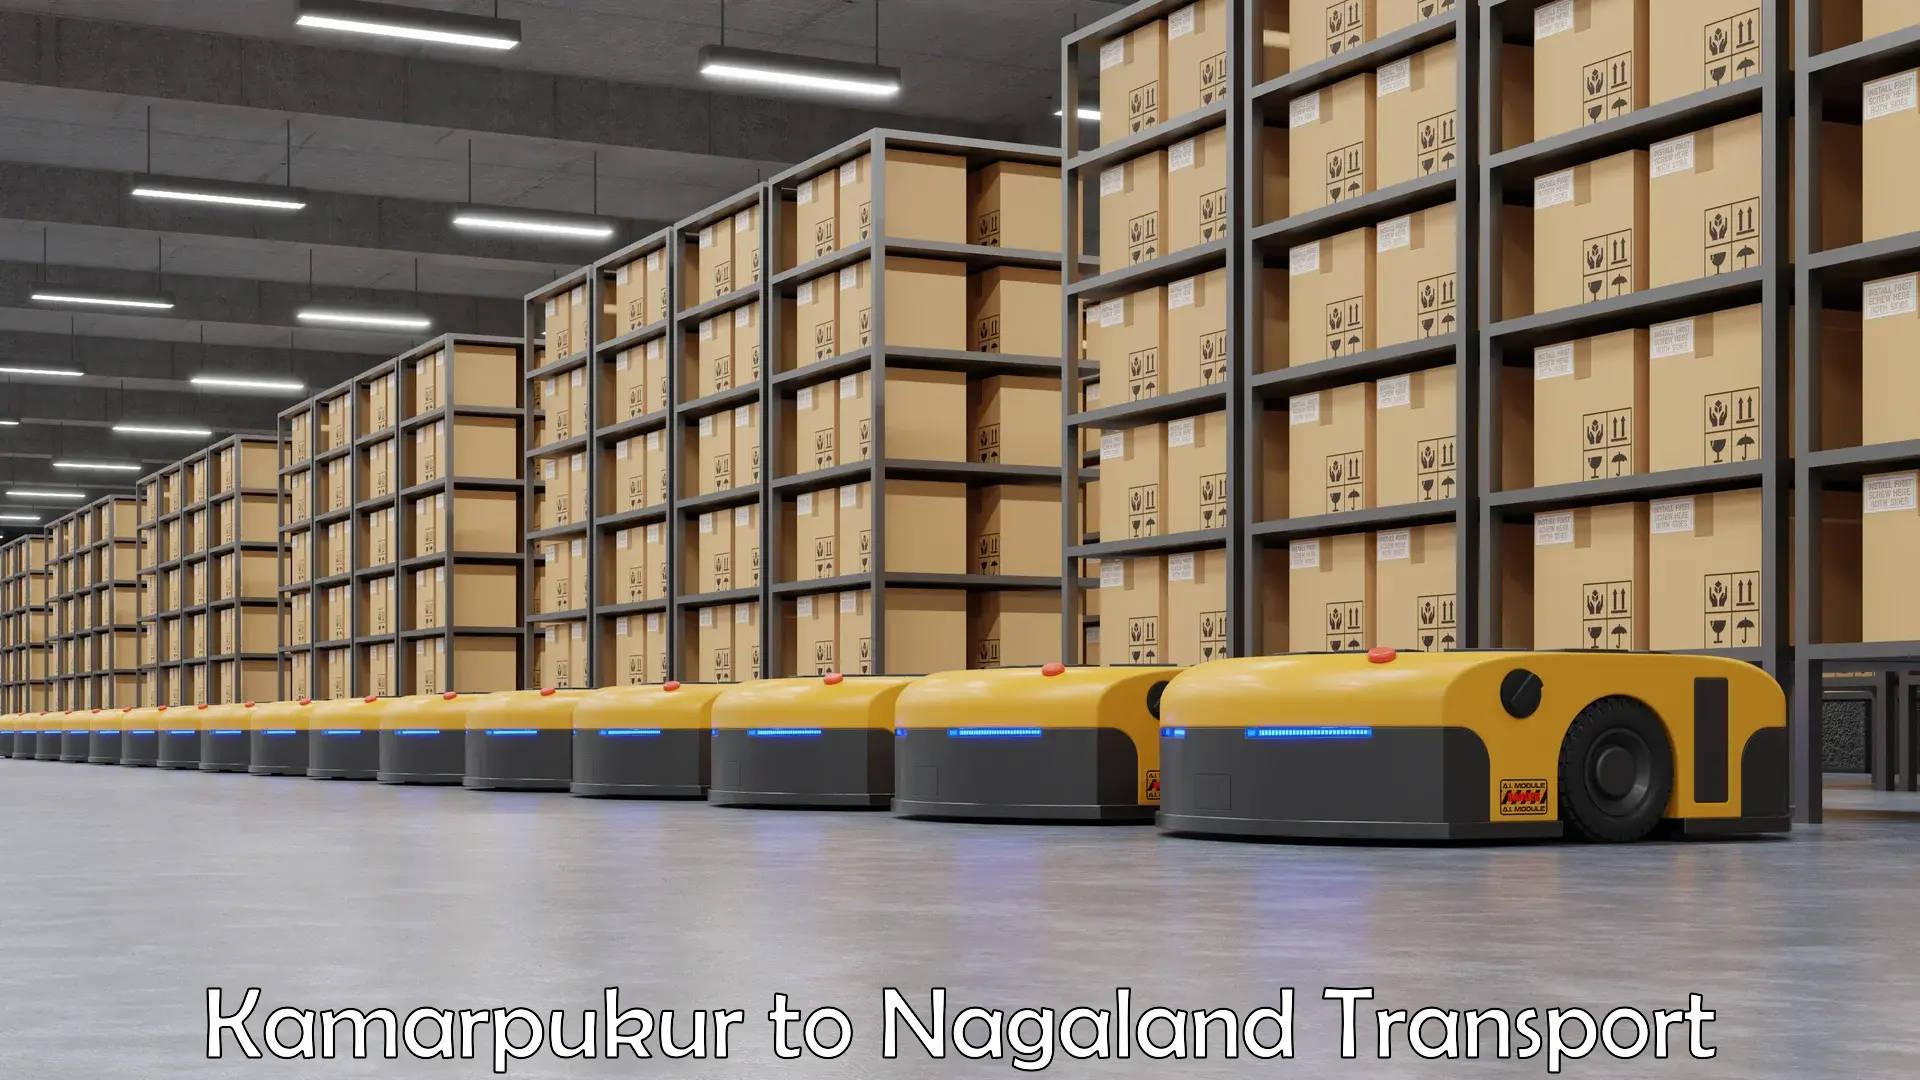 Daily transport service Kamarpukur to Nagaland